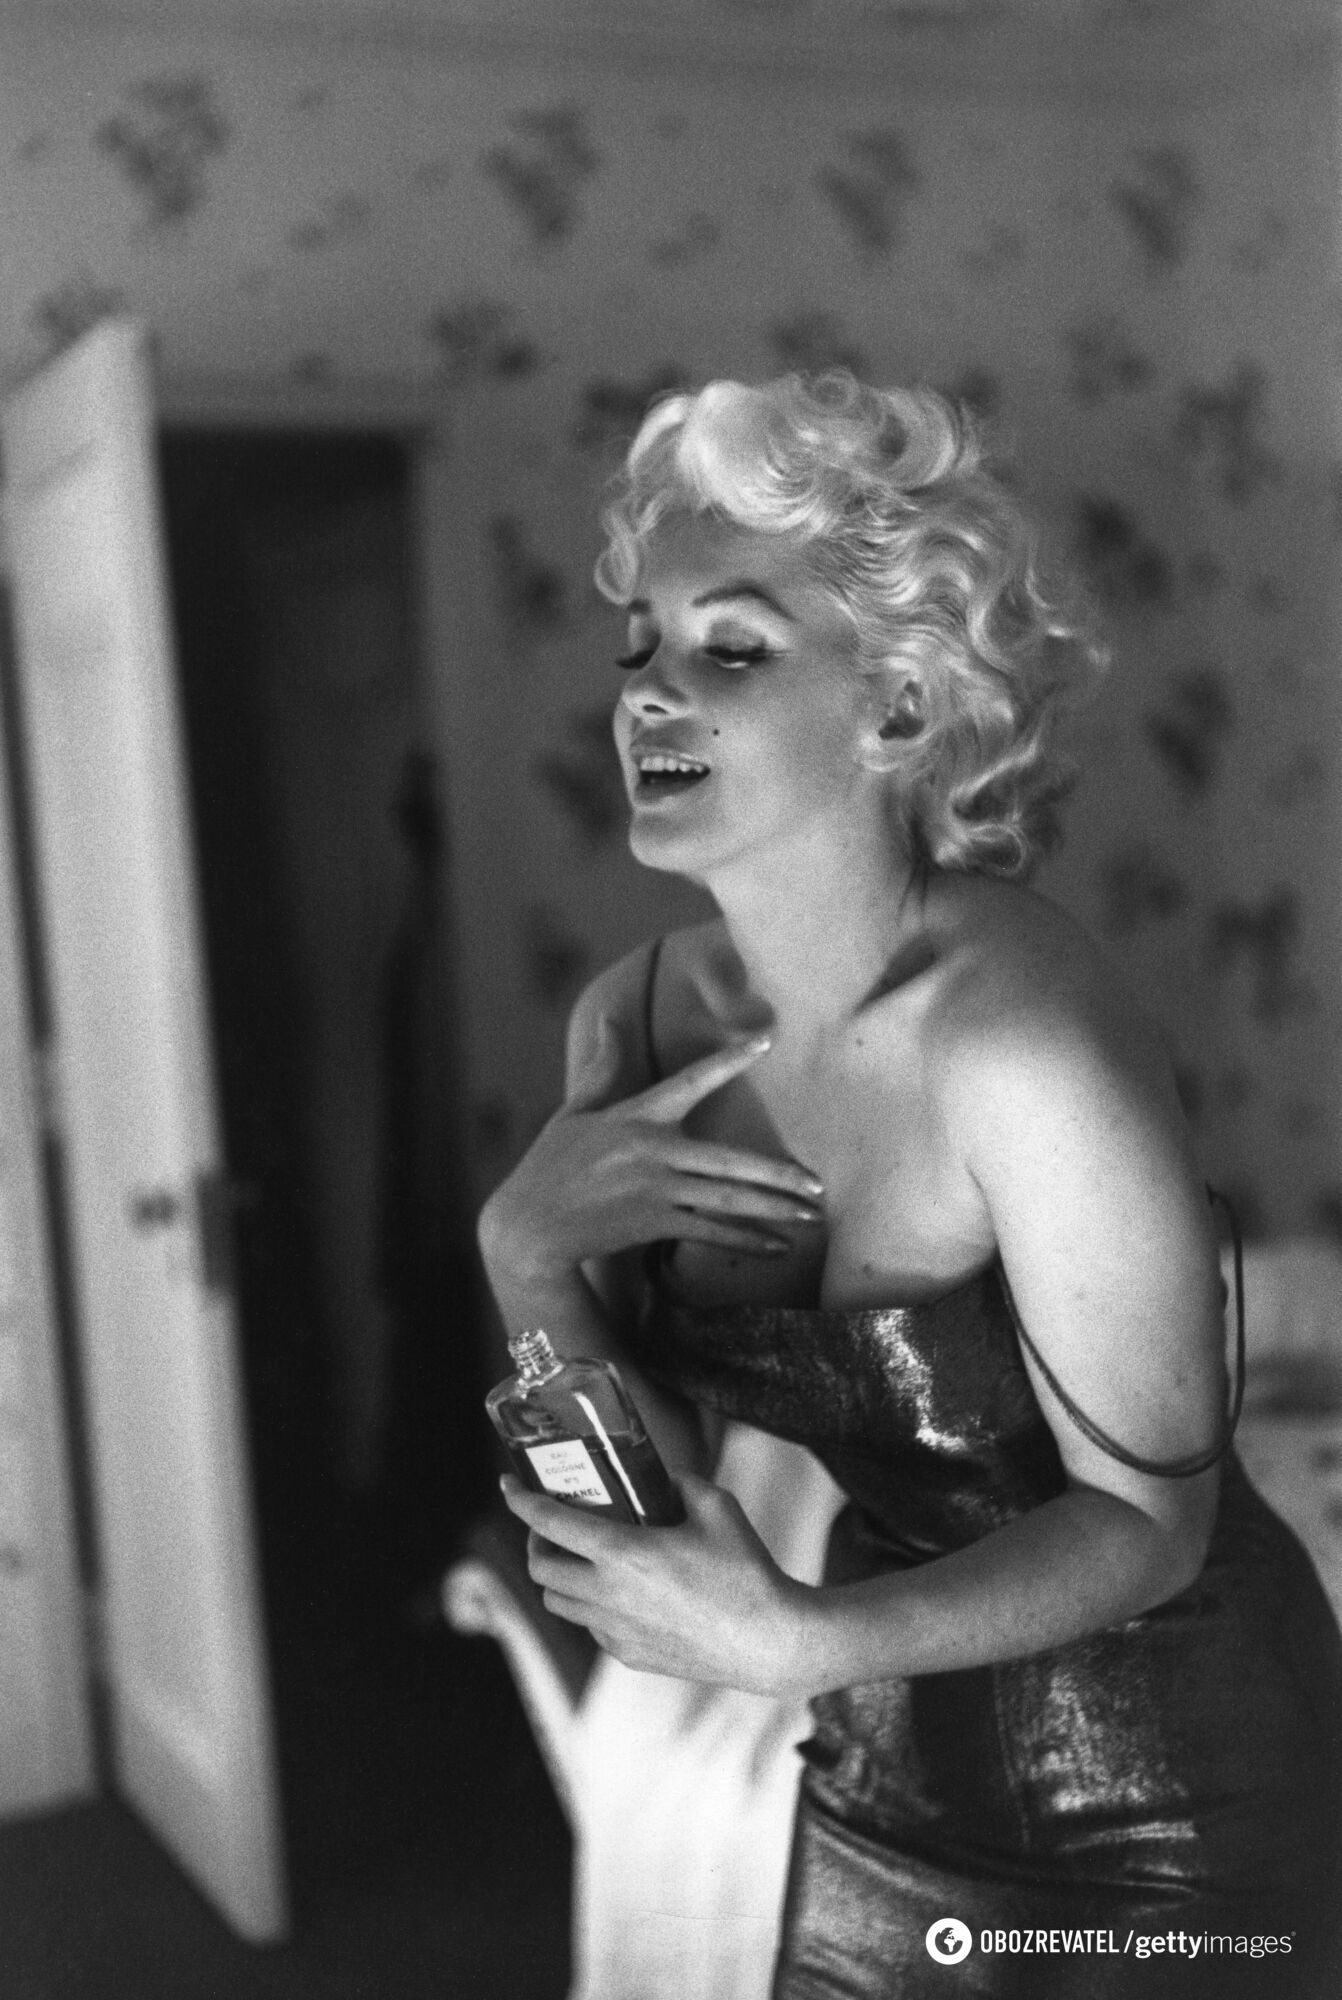 Od Chanel No. 5 do Givenchy: 5 wykwintnych perfum noszonych przez Marilyn Monroe, Audrey Hepburn i inne ikony piękna XX wieku.